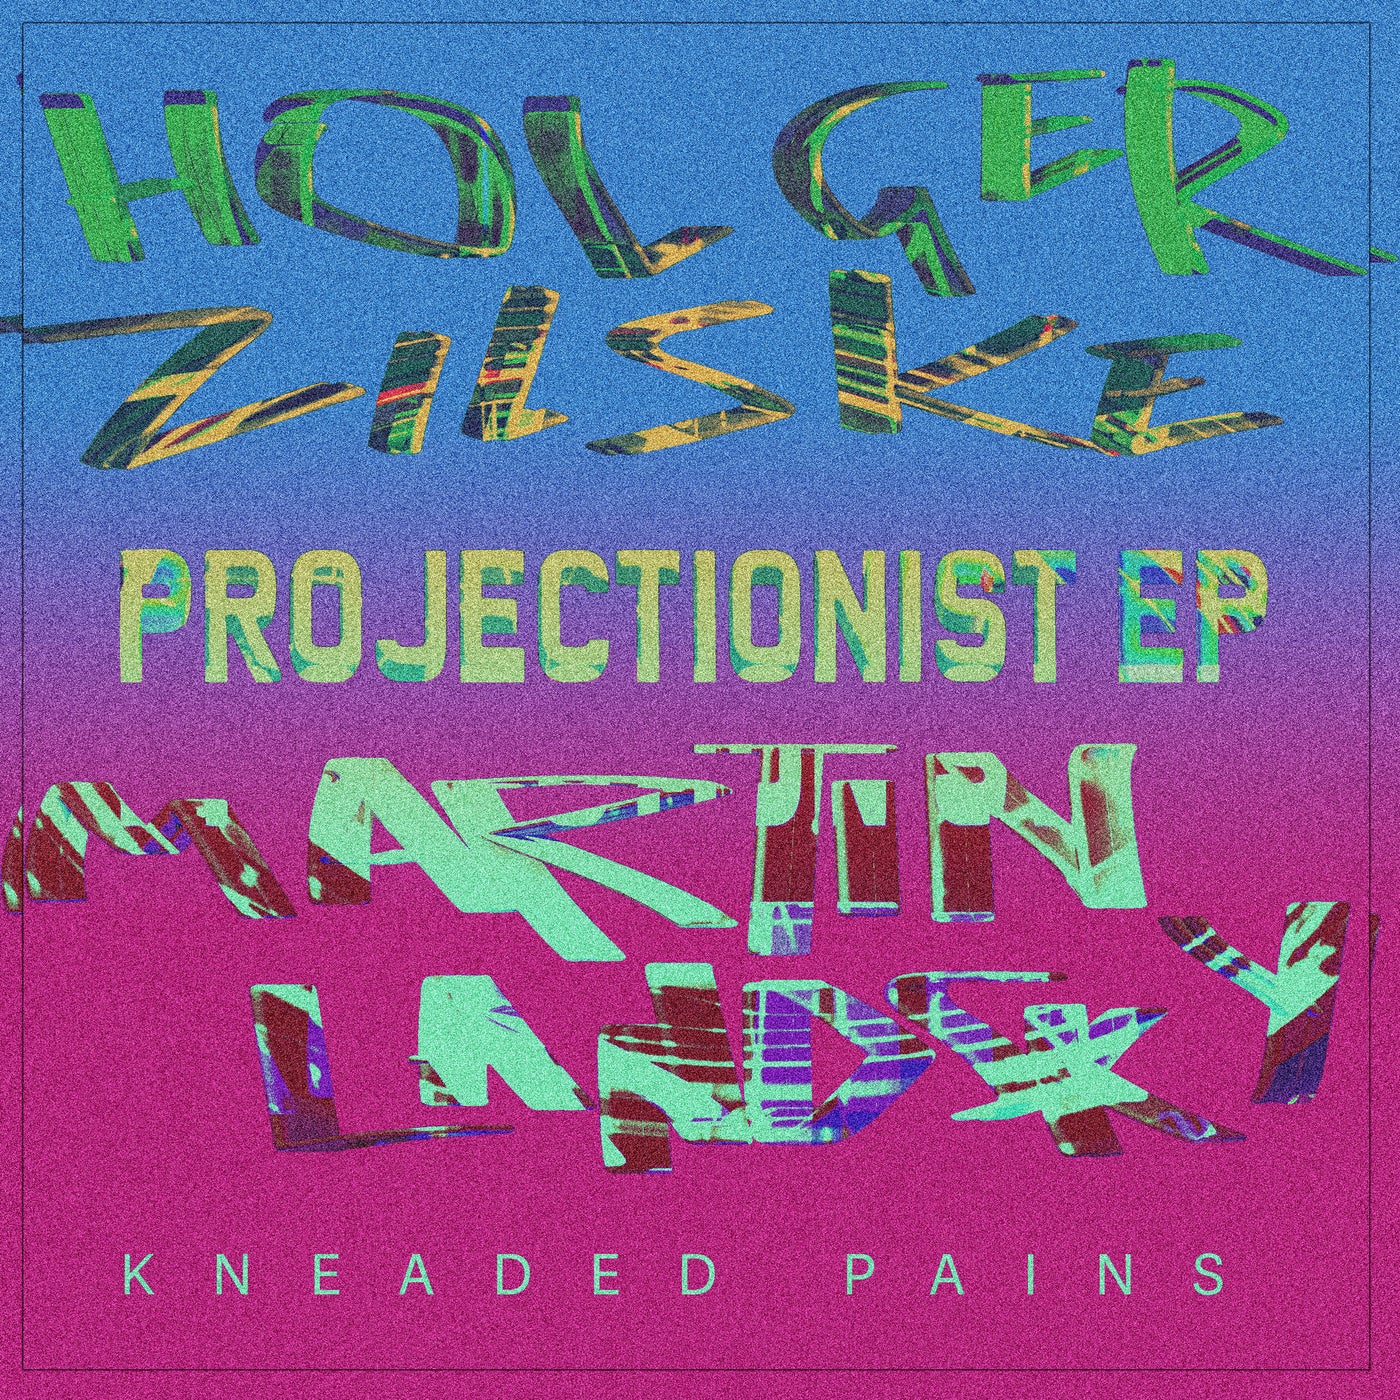 image cover: Martin Landsky & Holger Zilske - Projectionist EP on Kneaded Pains